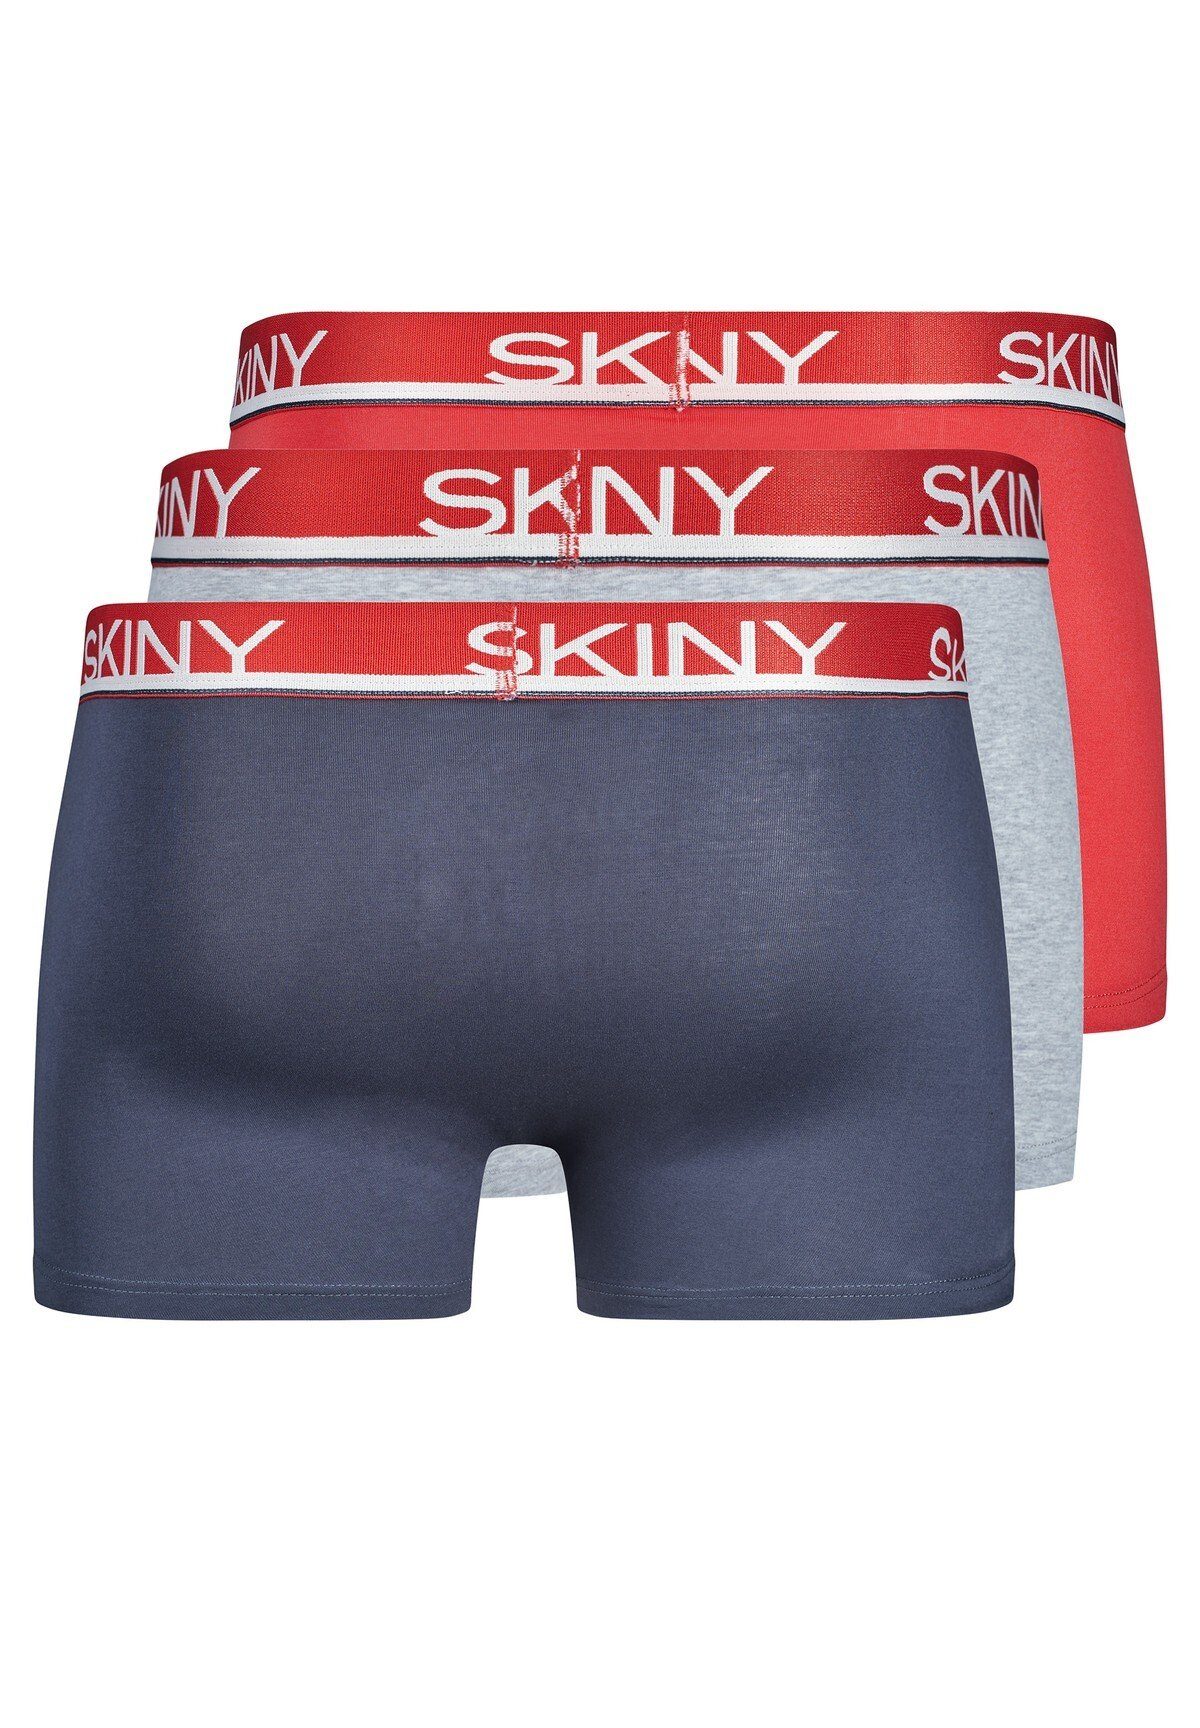 Shorts 3er Blau/Grau/Rot Pack Pants Herren Skiny Boxer Boxer Trunks, -